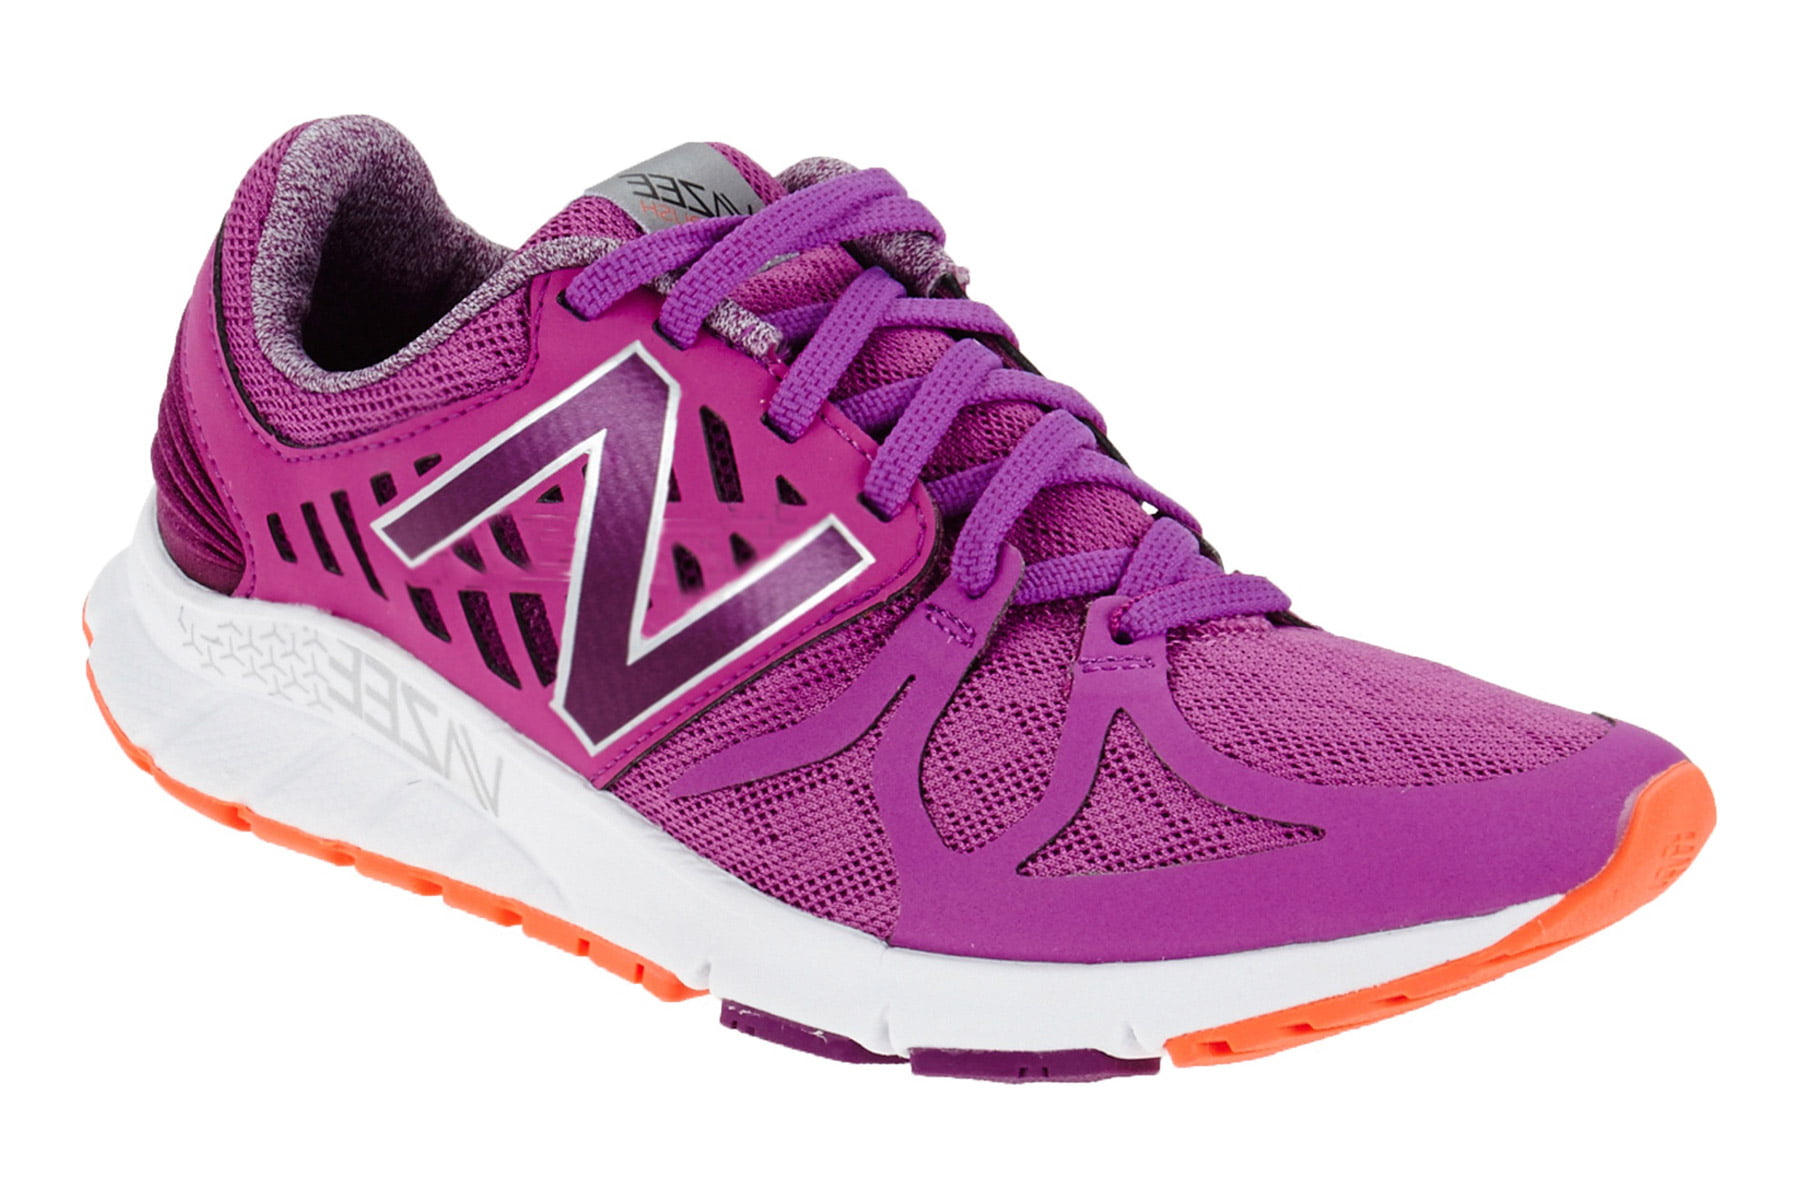 New Balance - New Balance Women's Vazee Rush Running Shoe, Purple/White, 5.5 B US - Walmart.com